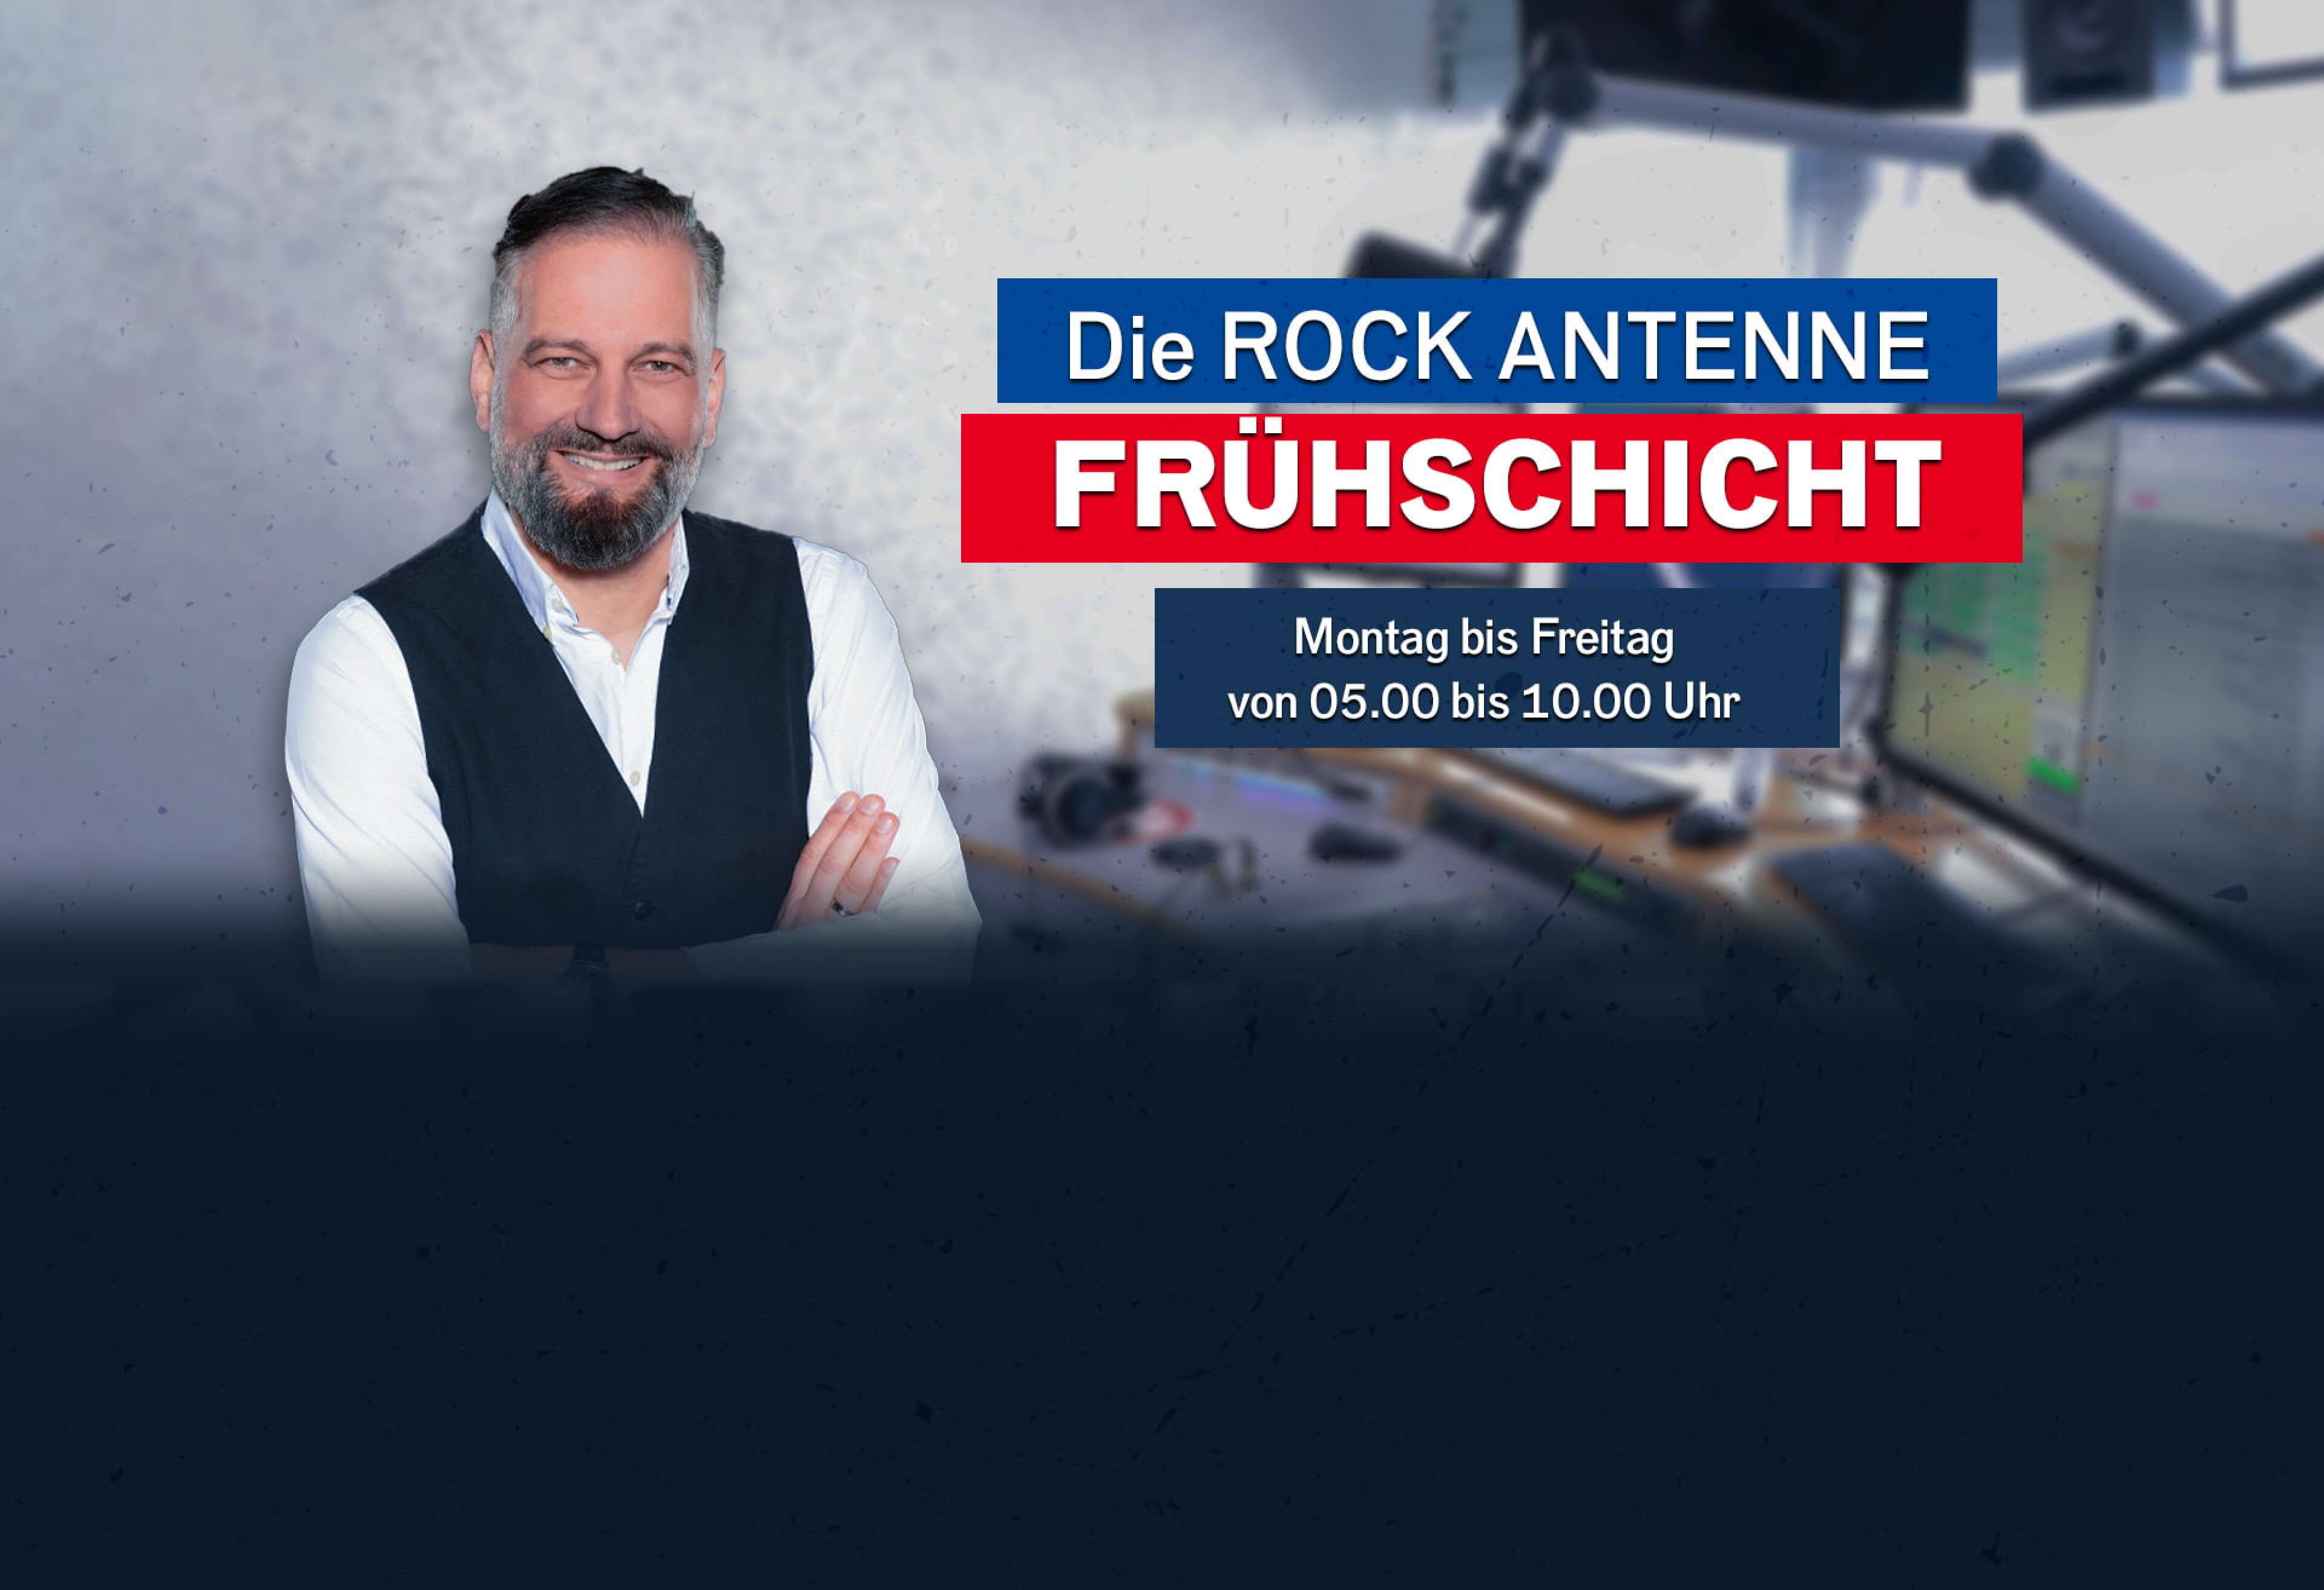 Barny Barnsteiner mit der Aufschrift "Die ROCK ANTENNE Frühschicht - Montag bis Freitag von 05.00 bis 10.00 Uhr""